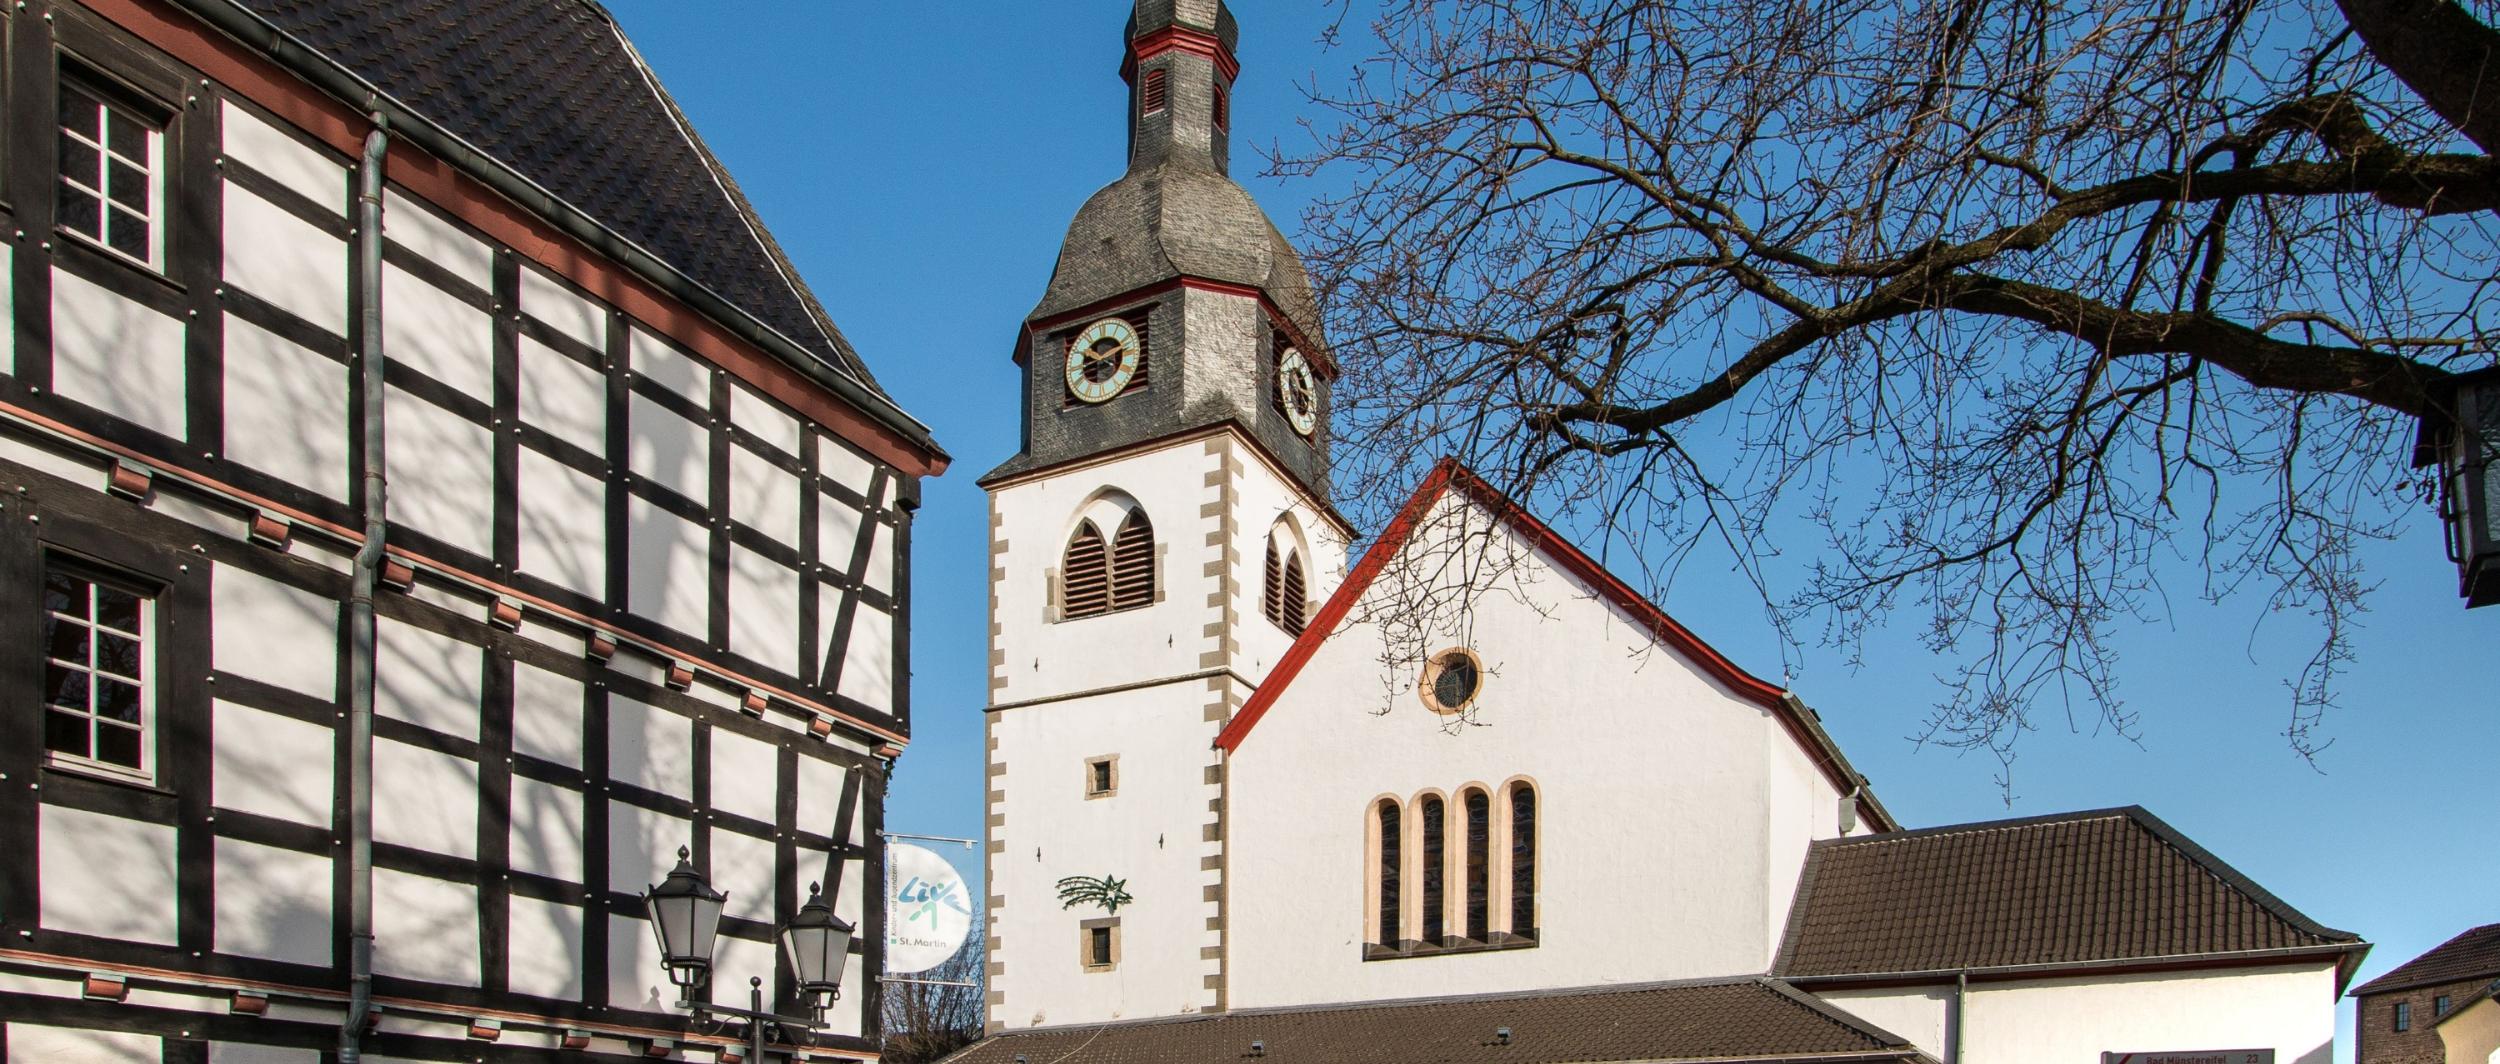 Pfarrkirche St. Martin Rheinbach